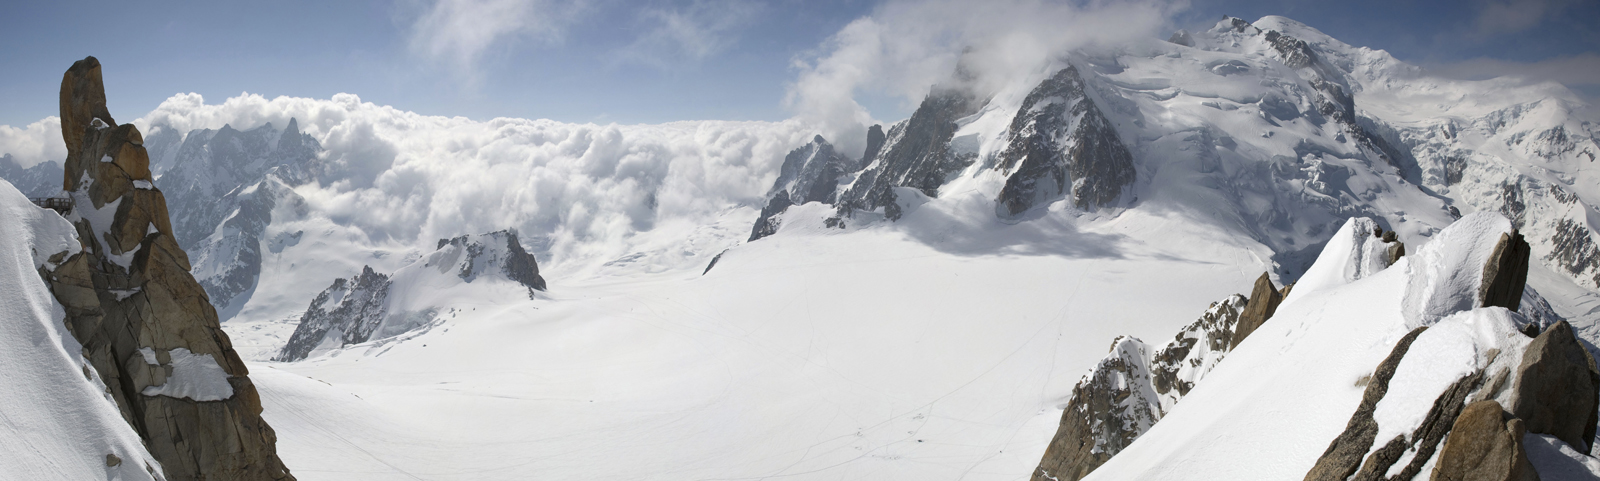 Mont Blanc nad oblačnou peřinou